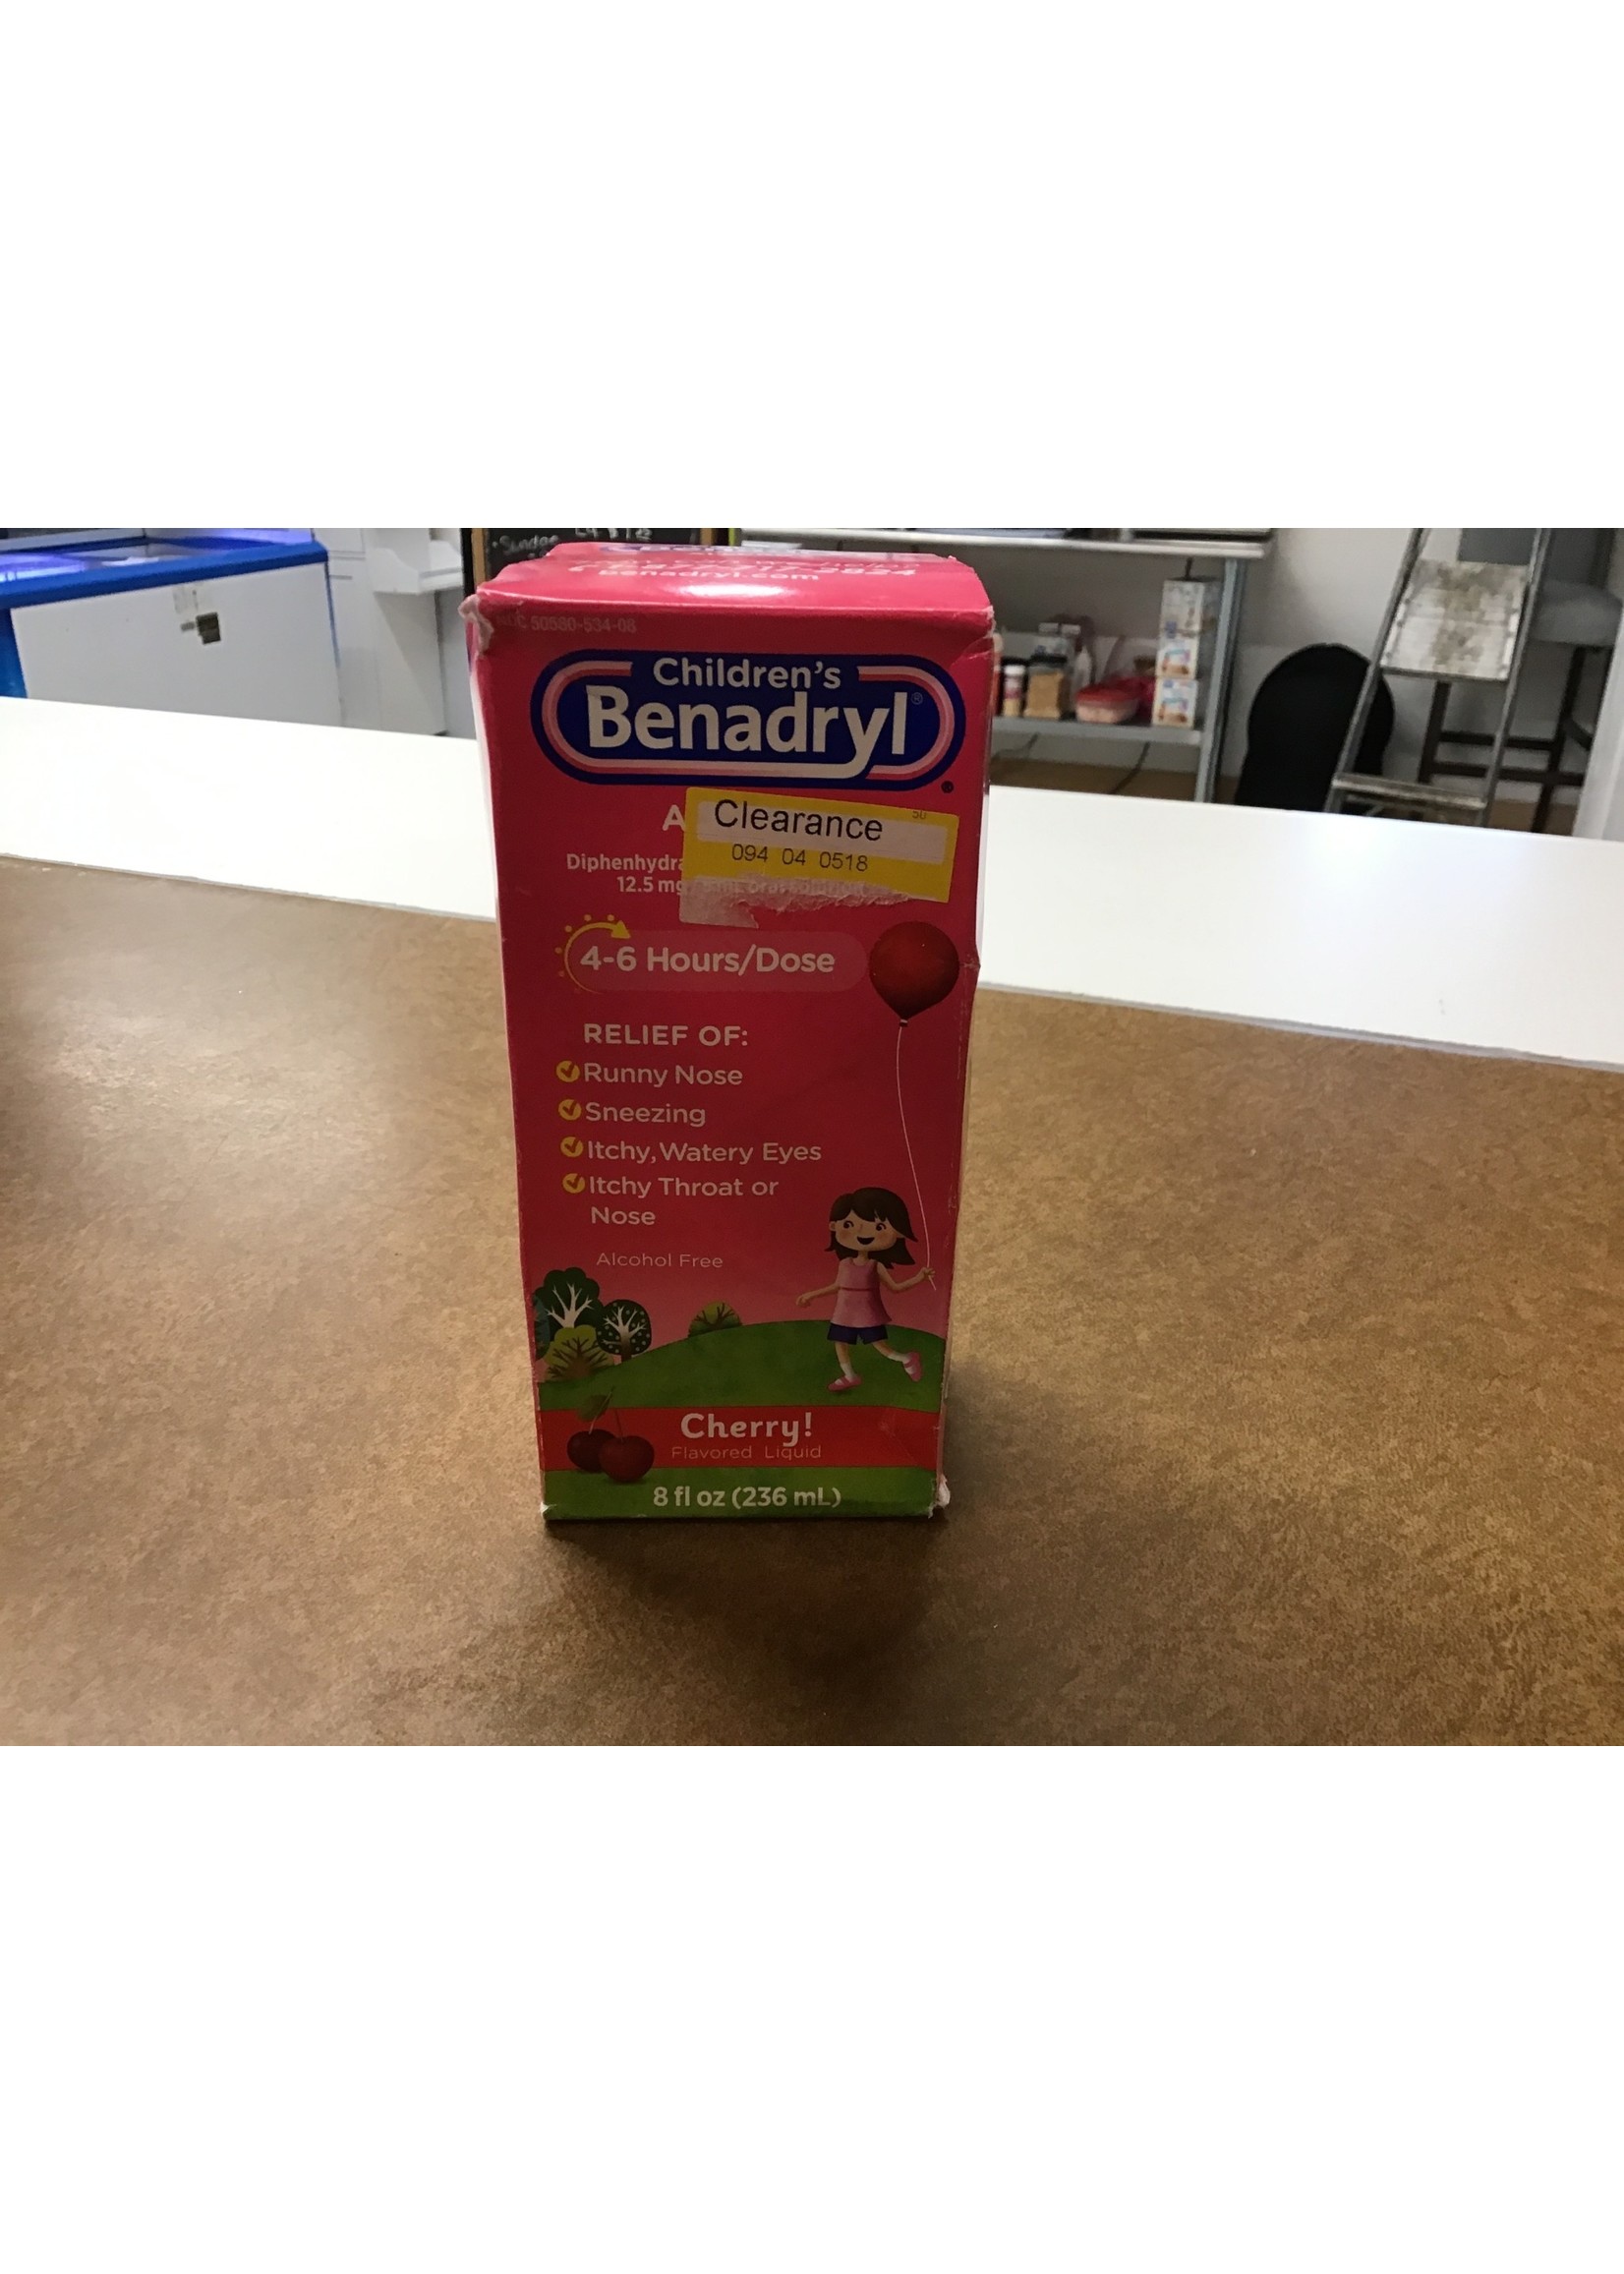 *damaged box* Children's Benadryl Allergy Relief Liquid - Cherry - Diphenhydramine - 8 fl oz